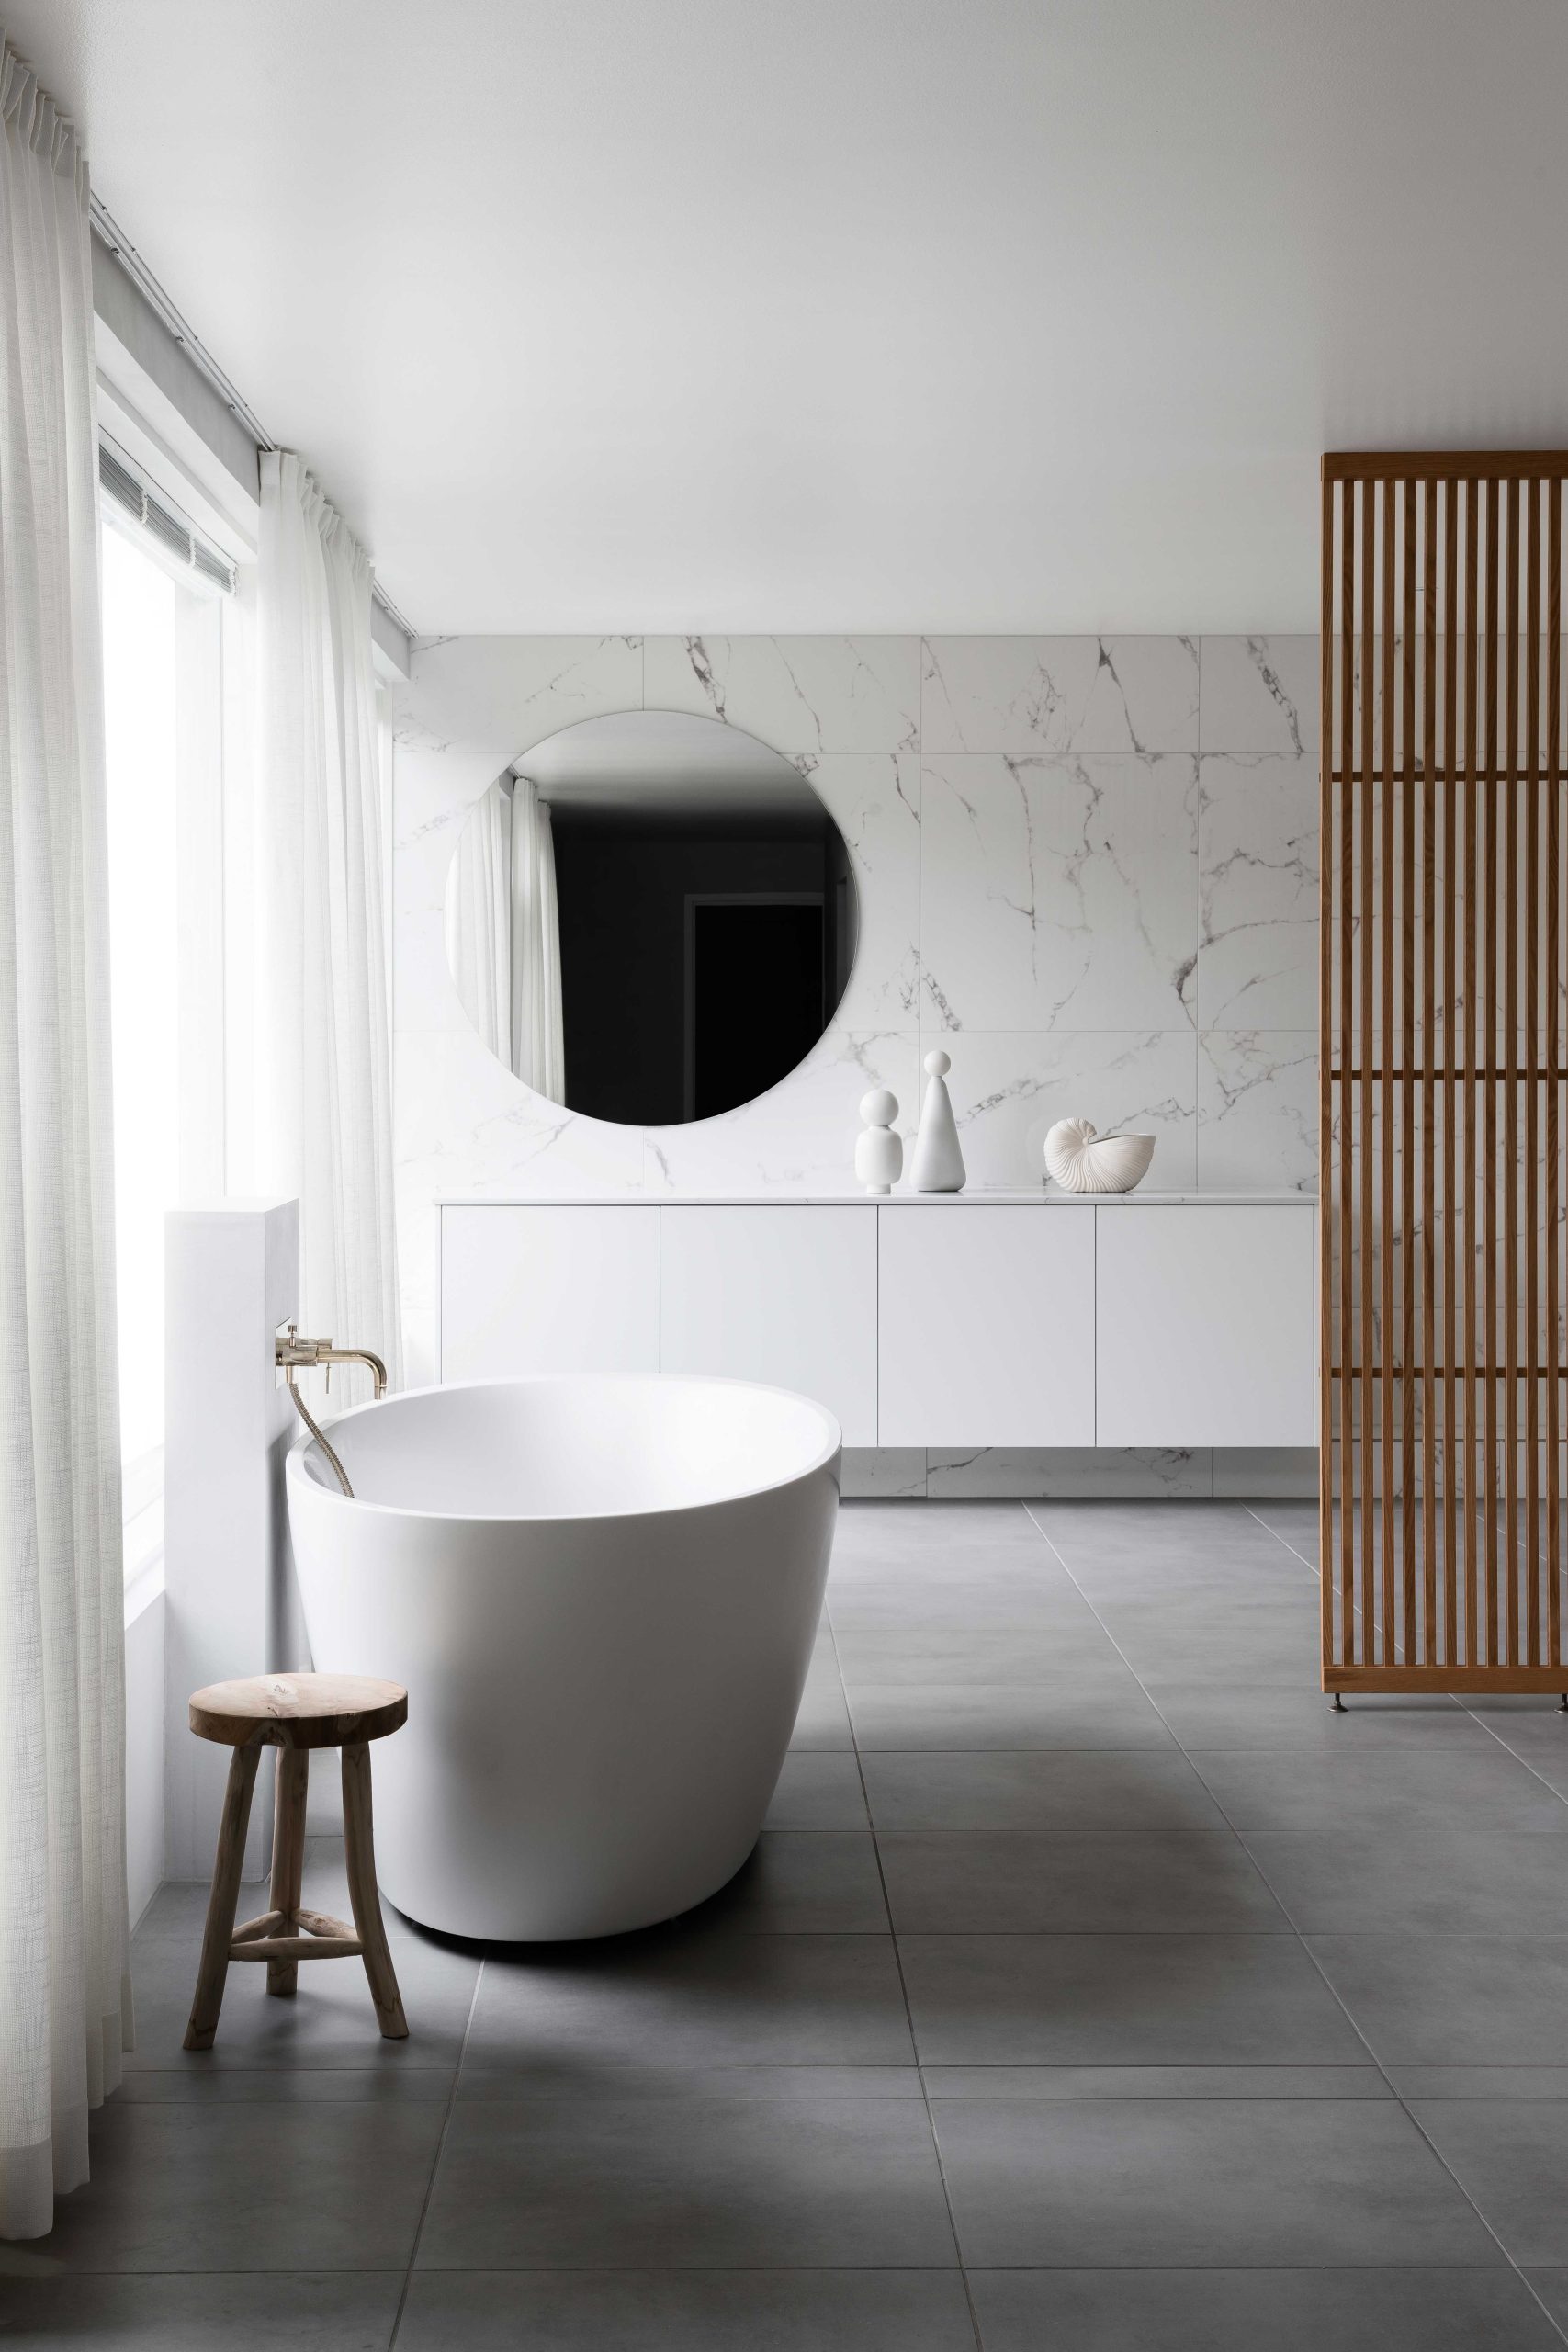 Blaun ja Laura Seppäsen suunnittelema skandinaavinen spa kylpyhuone marmorikuvioidulla laatalla ja messinkisillä yksityiskohdilla